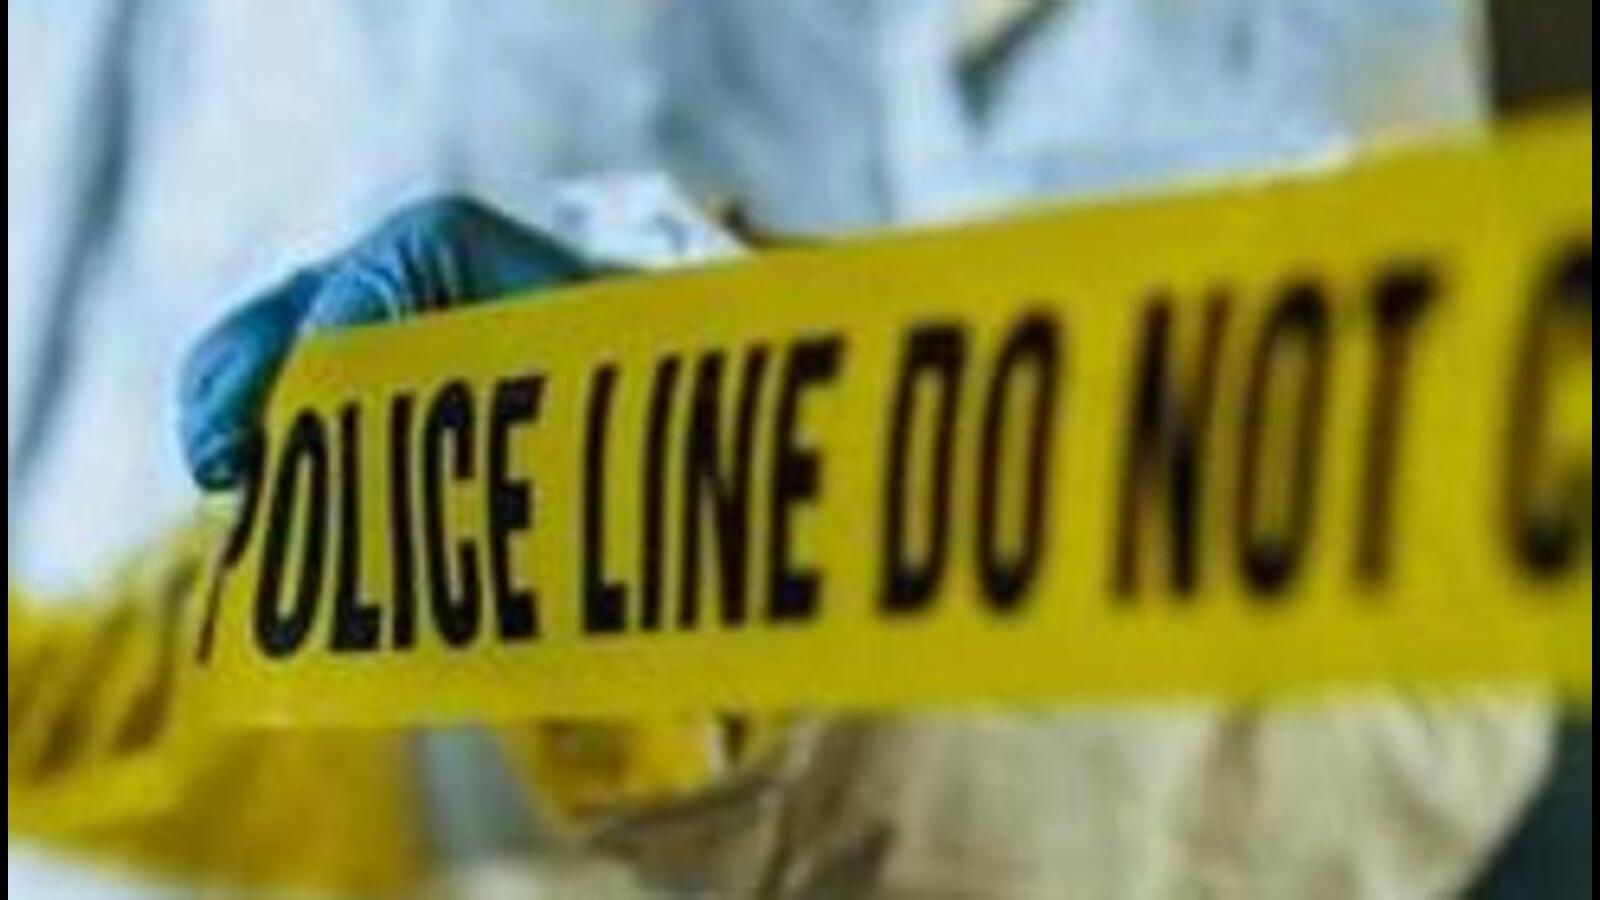 Man beaten to death on suspicion of theft, 3 held - Hindustan Times